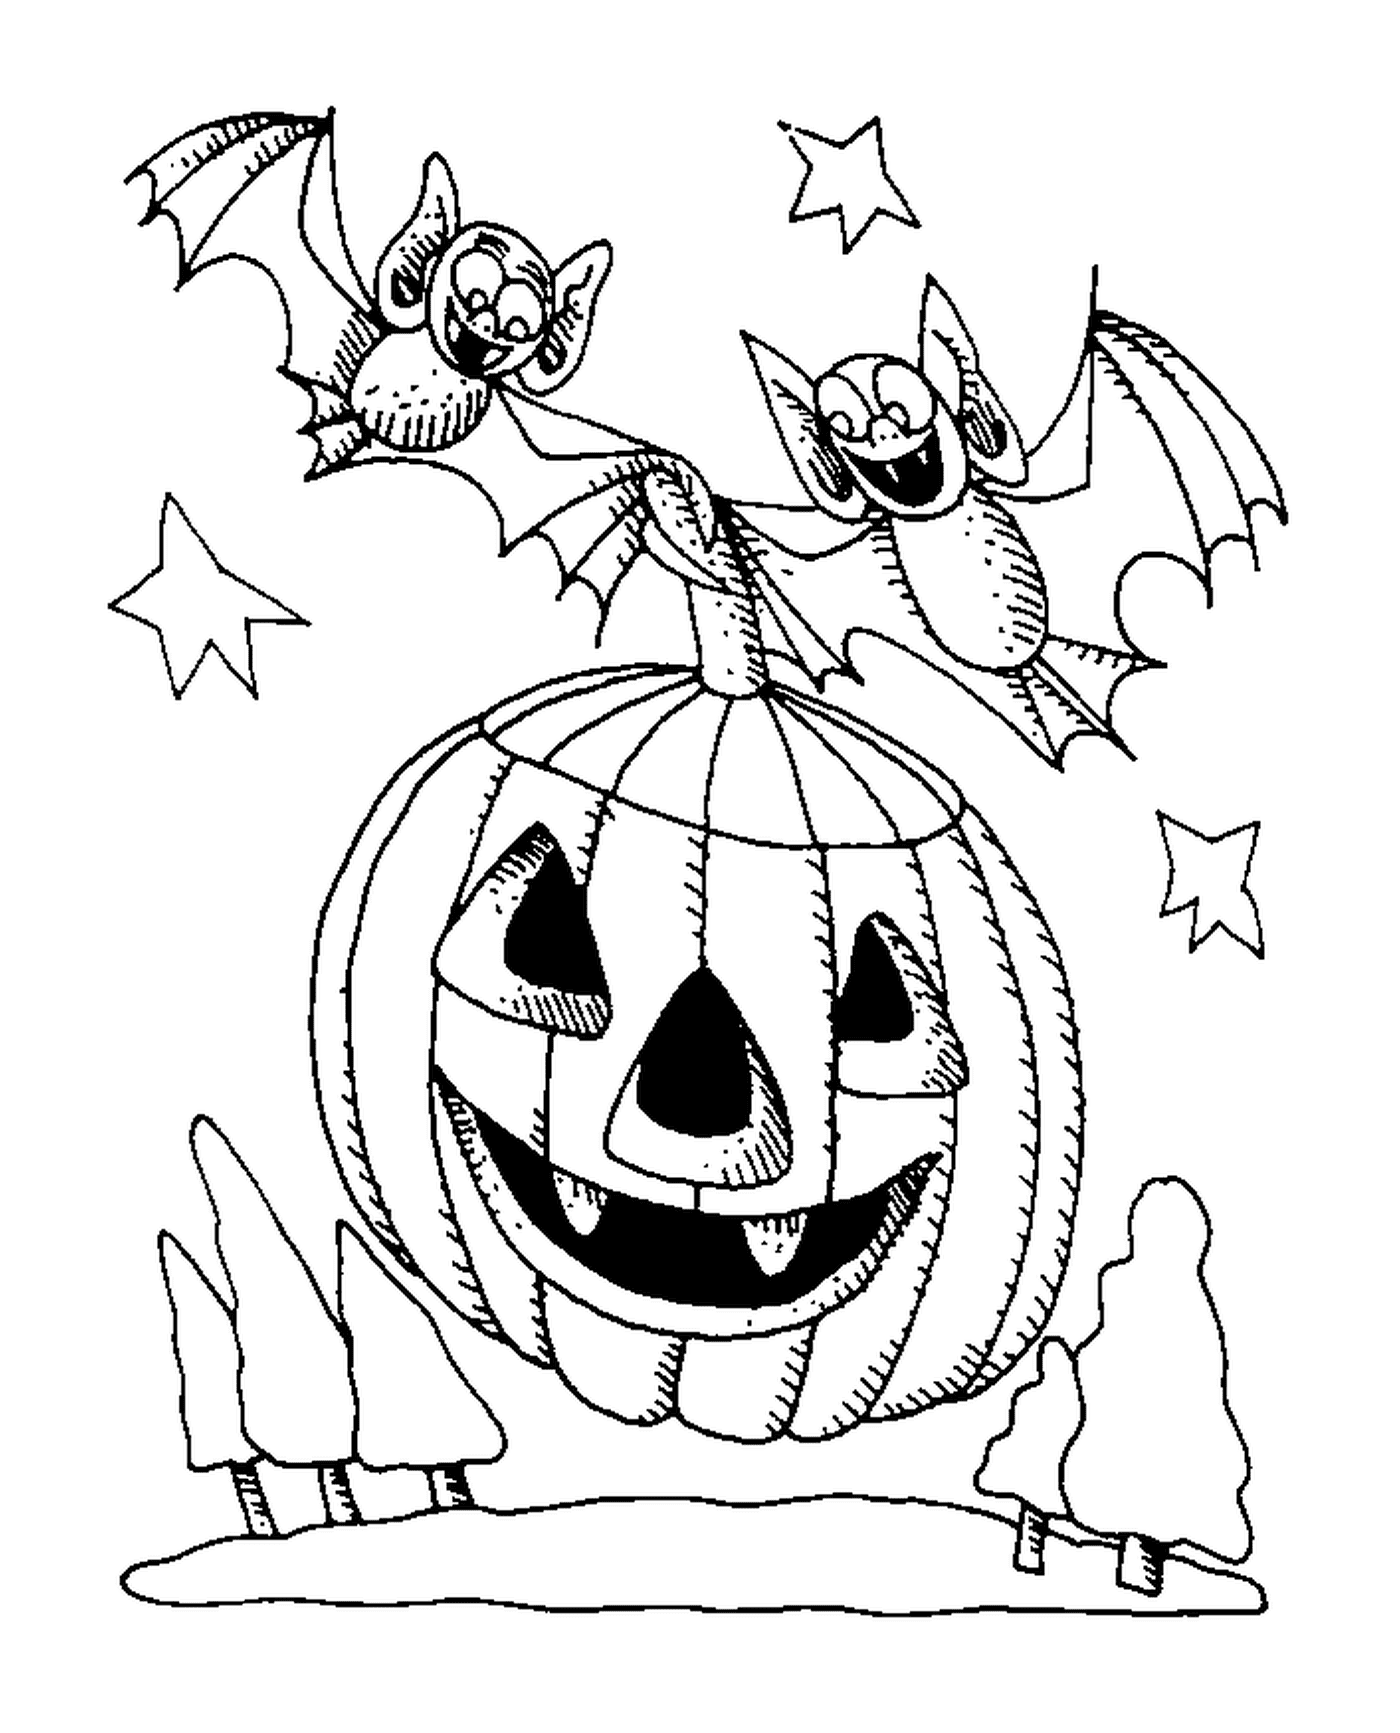   Une citrouille d'Halloween avec deux chauves-souris 